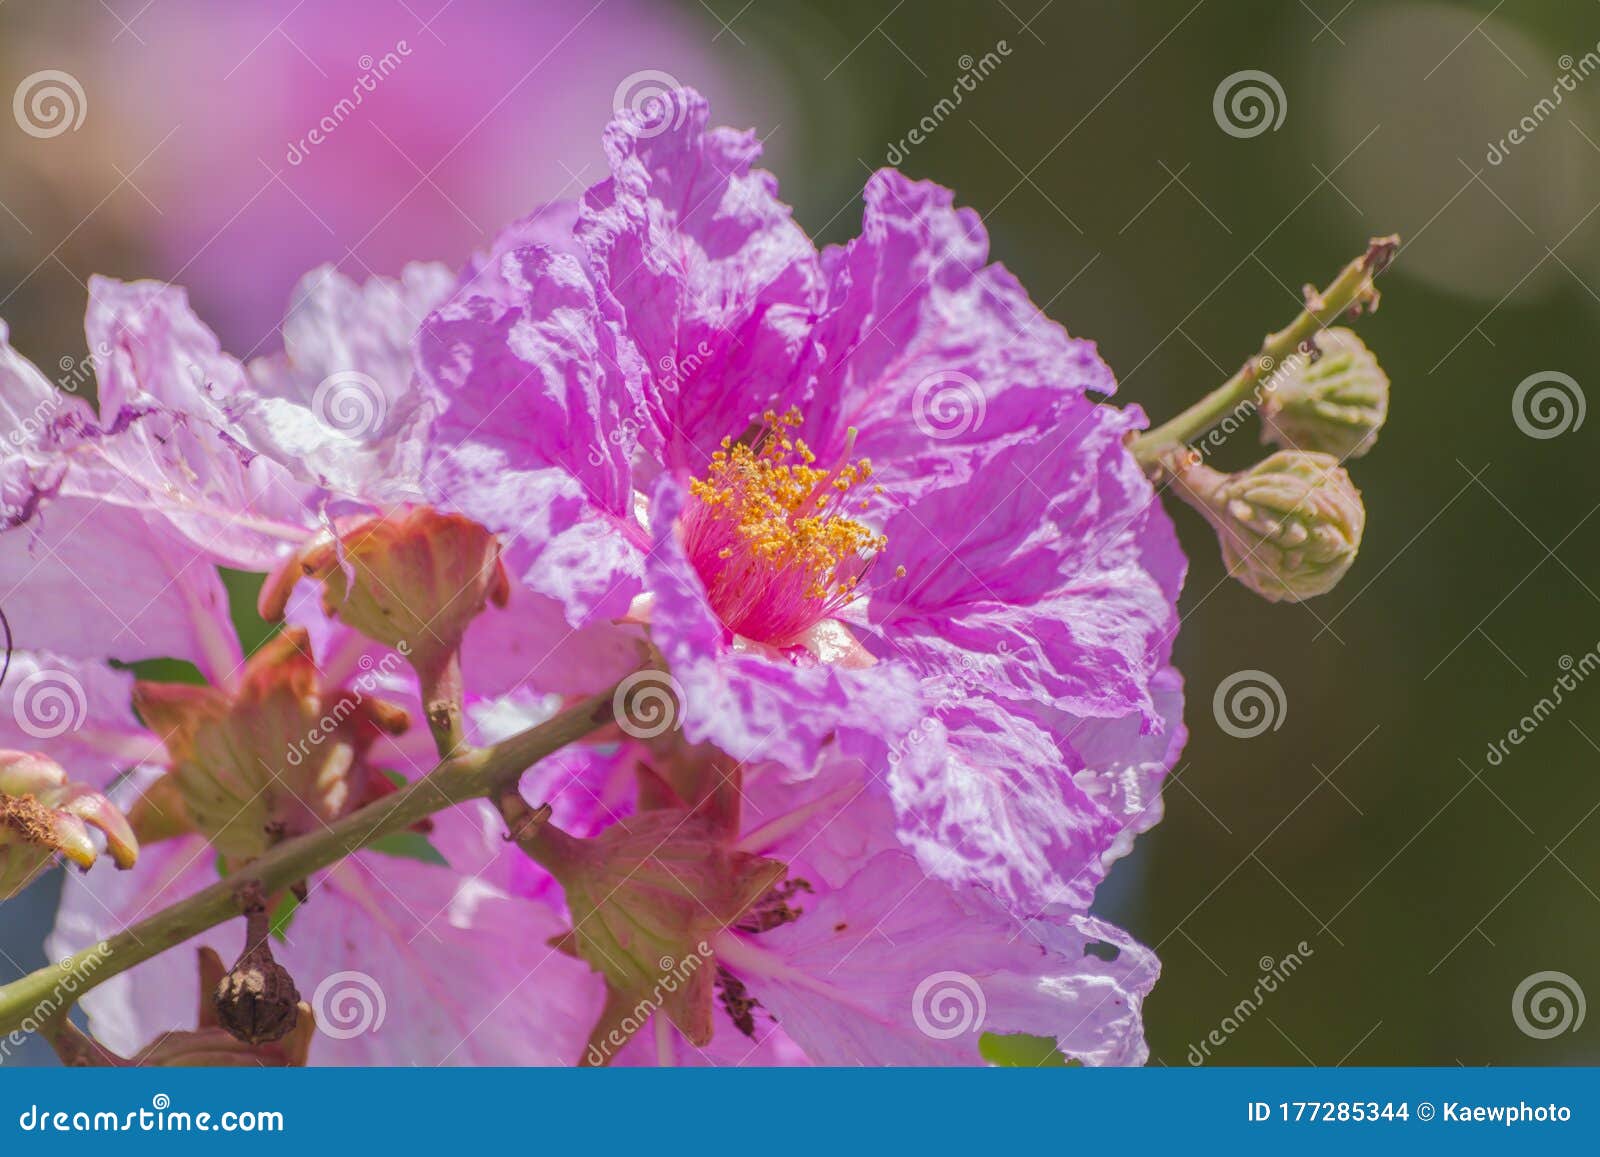 Lagerstroemia Floribunda Jack. it is a Very Beautiful Purple Flowers ...